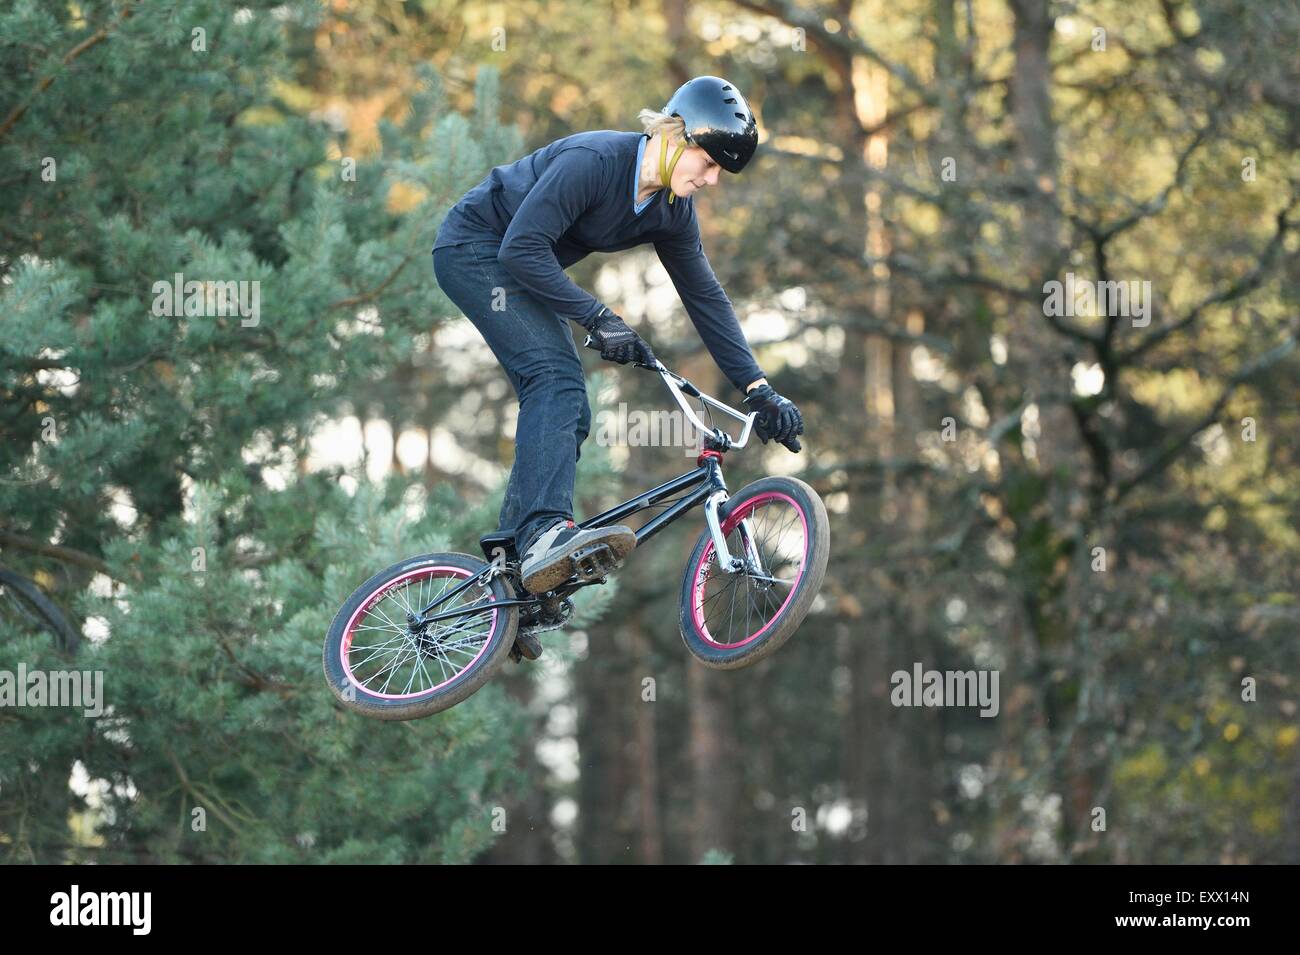 Adolescent qui saute dans l'air avec son vélo BMX Banque D'Images